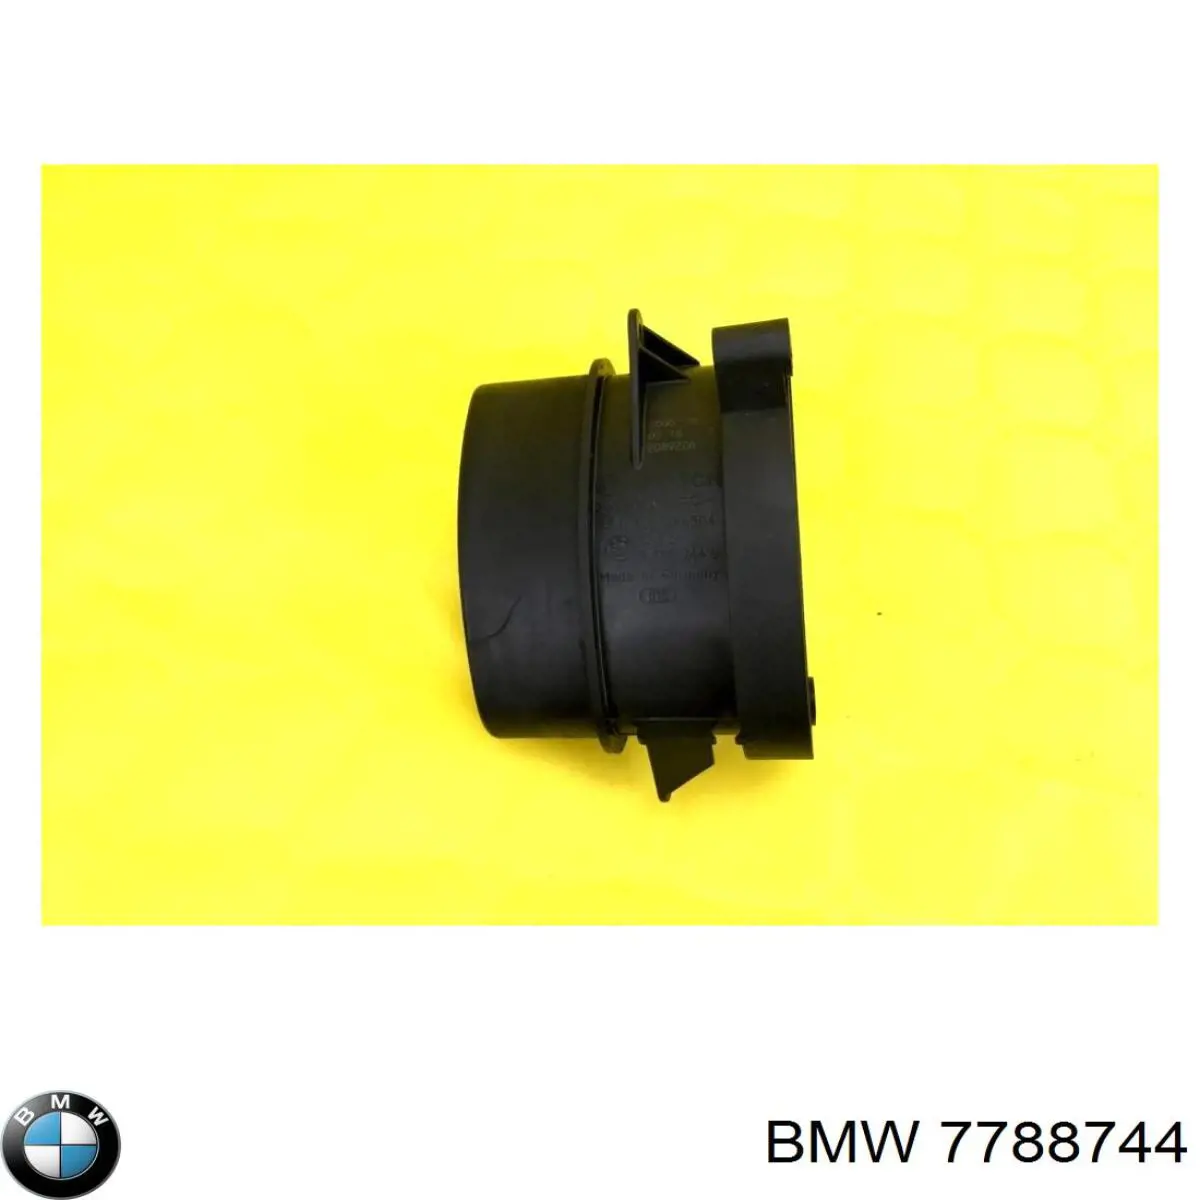 7788744 BMW sensor de fluxo (consumo de ar, medidor de consumo M.A.F. - (Mass Airflow))